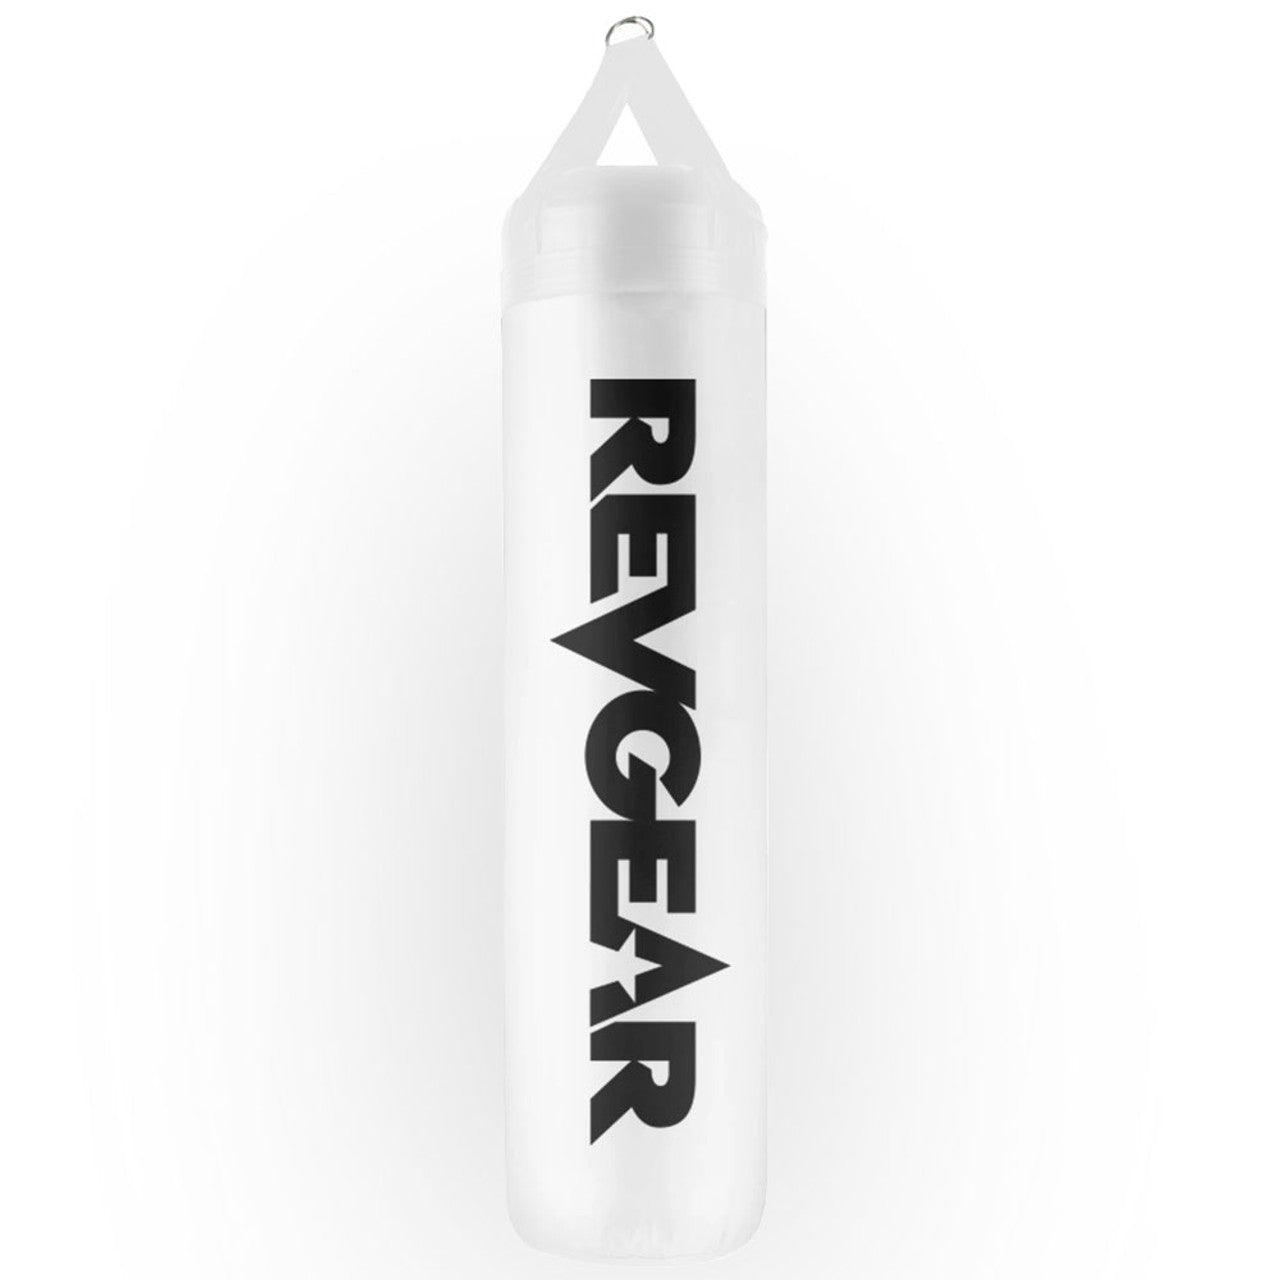 Revgear Pro Series 6 Heavy Bag - White - 6 ft. - Violent Art Shop